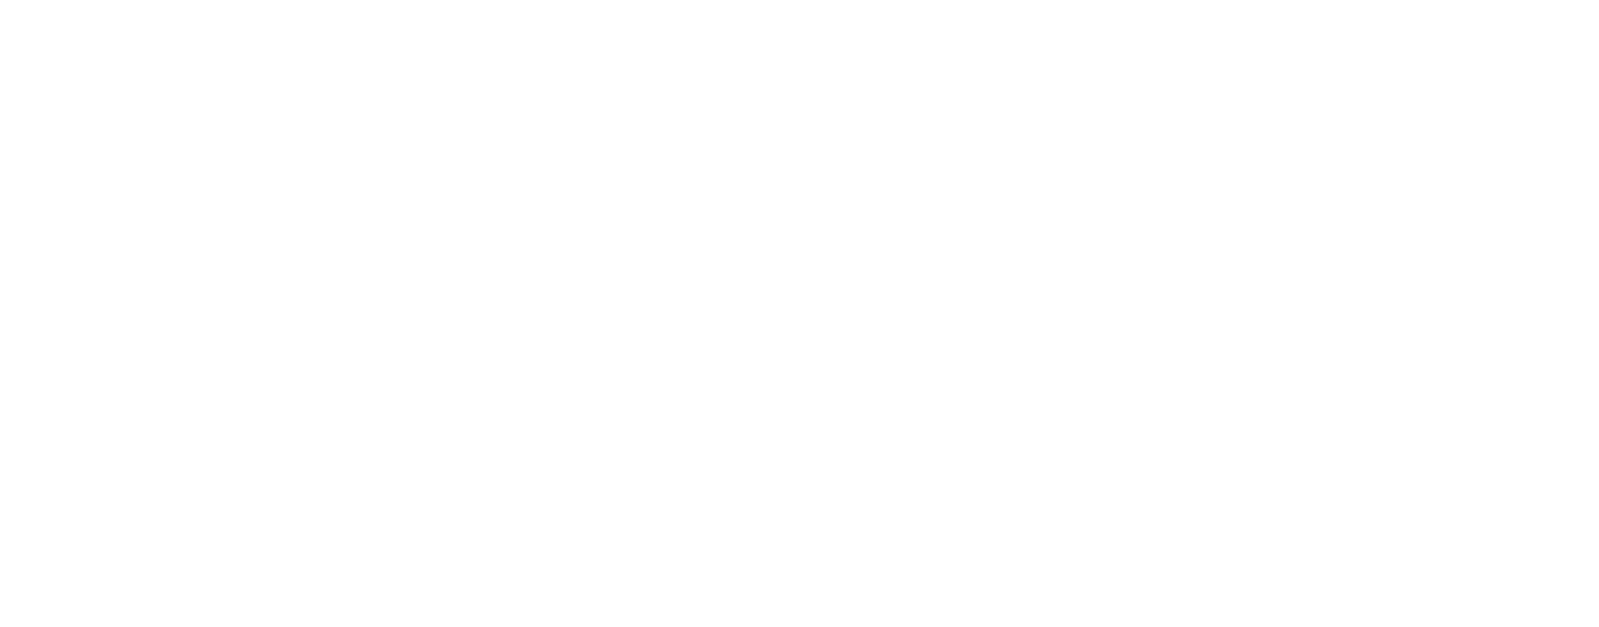 Warner Music Group
 logo large for dark backgrounds (transparent PNG)